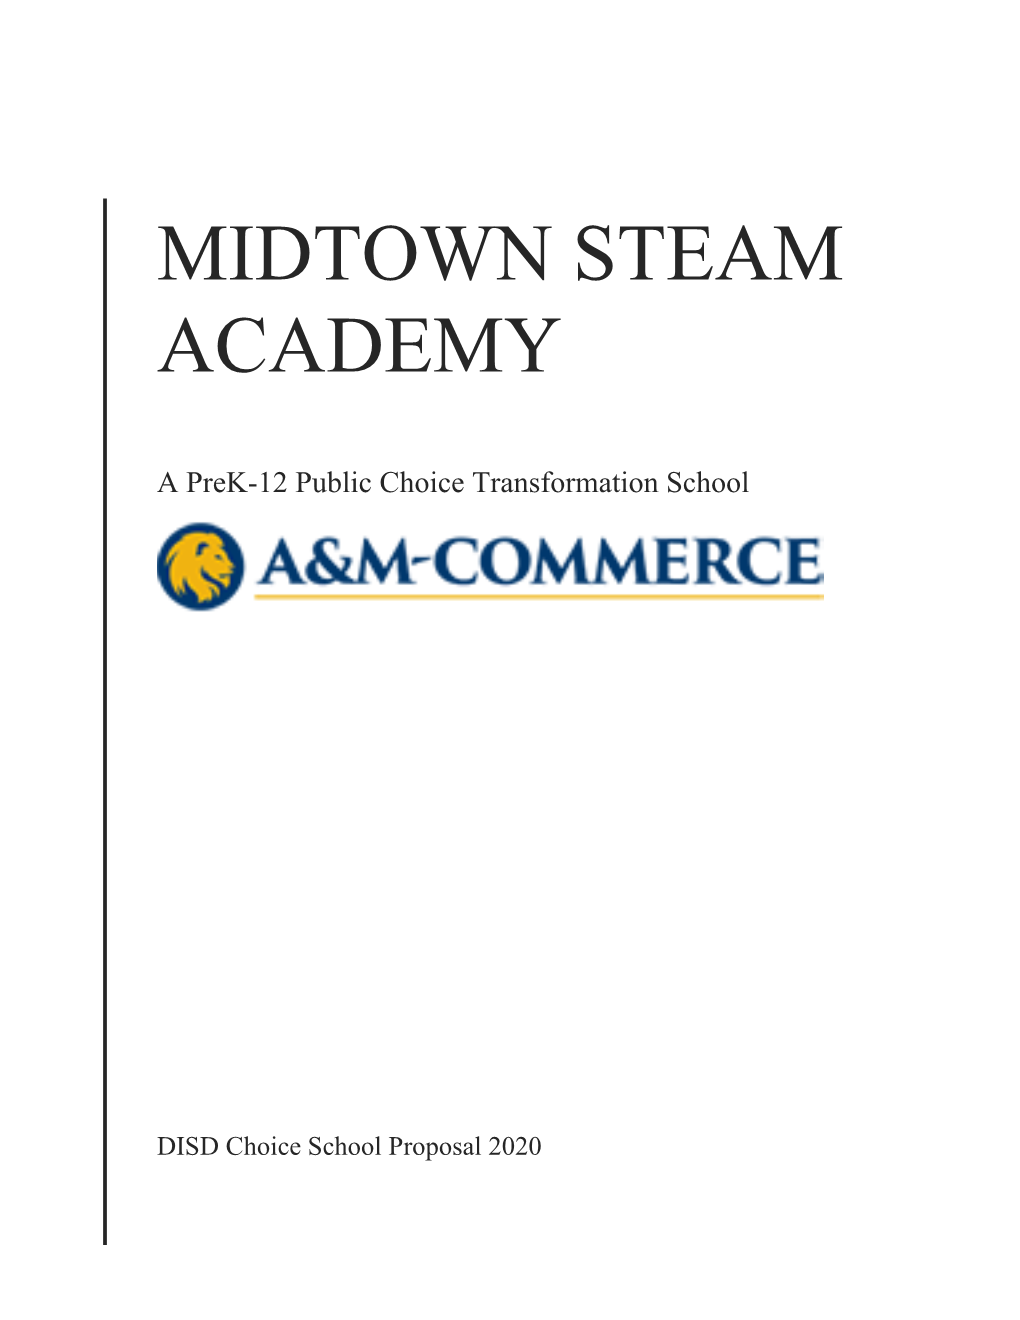 Midtown Steam Academy